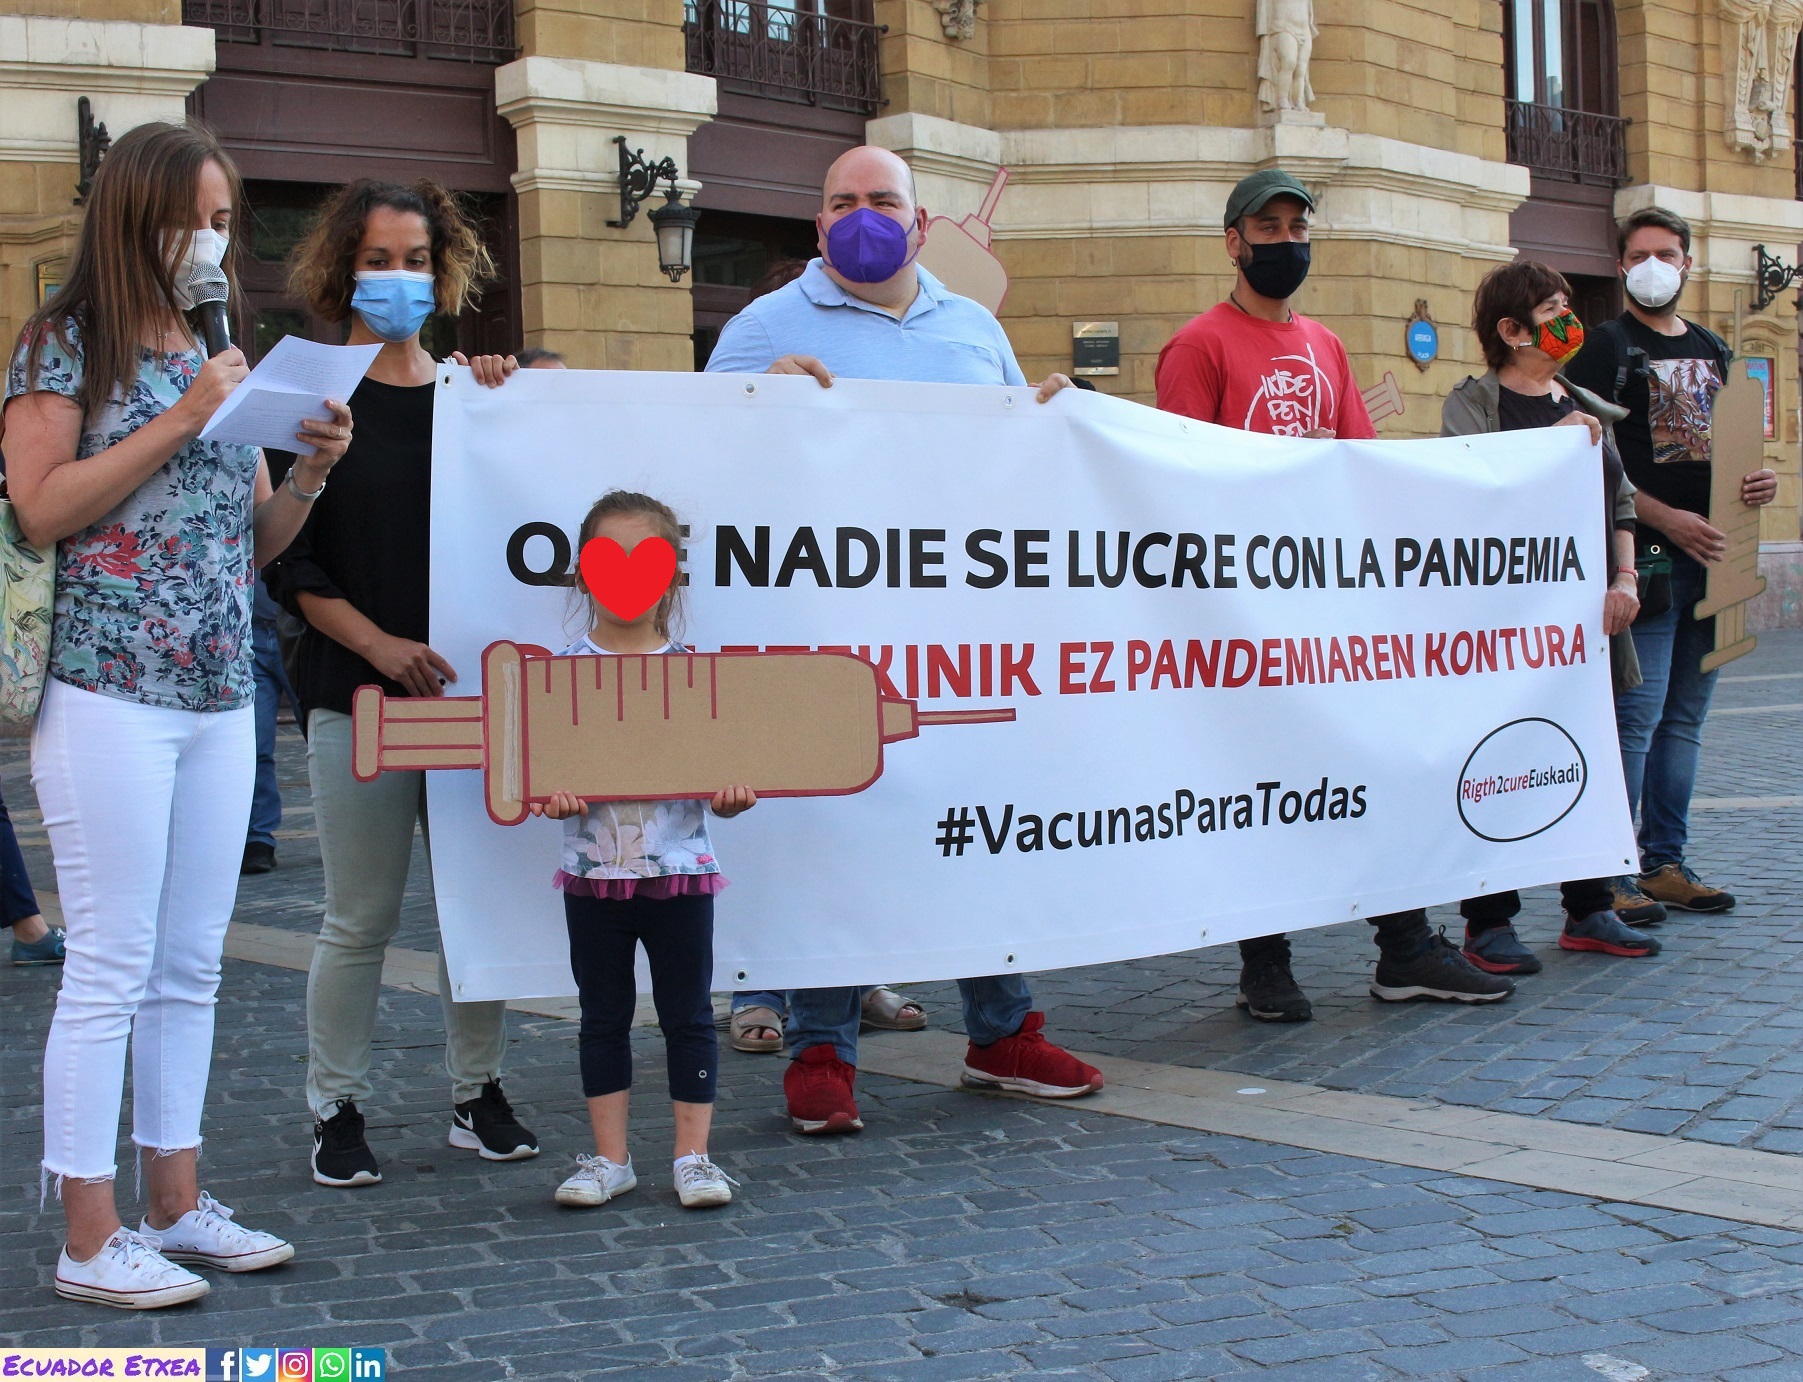 Right2Cure-Euskadi-Bilbao-vacunas-pandemia-covid19-coronavirus-omc-europa